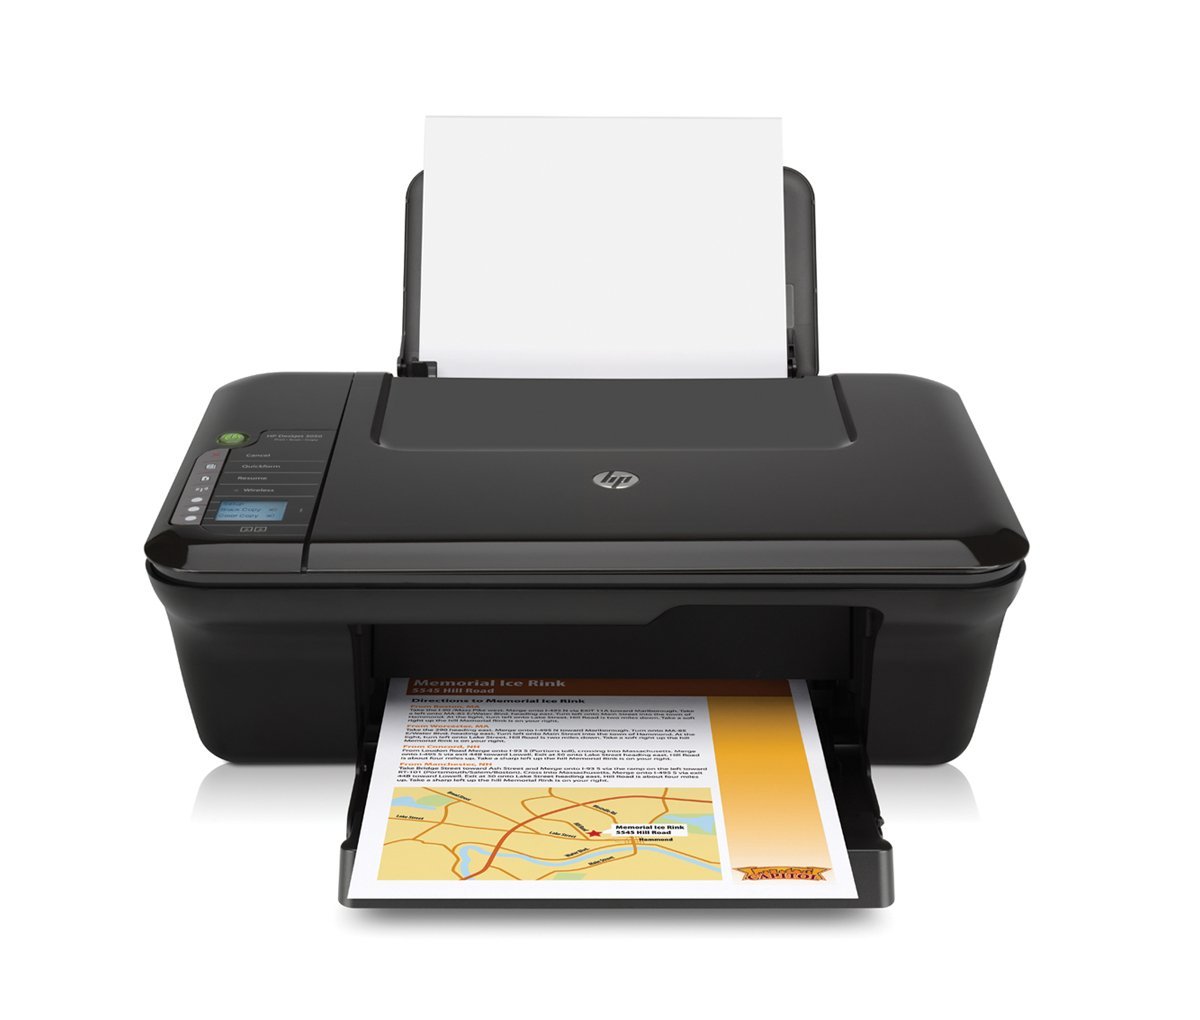 Impresora HP Deskjet 3050 All-in-One Printer.